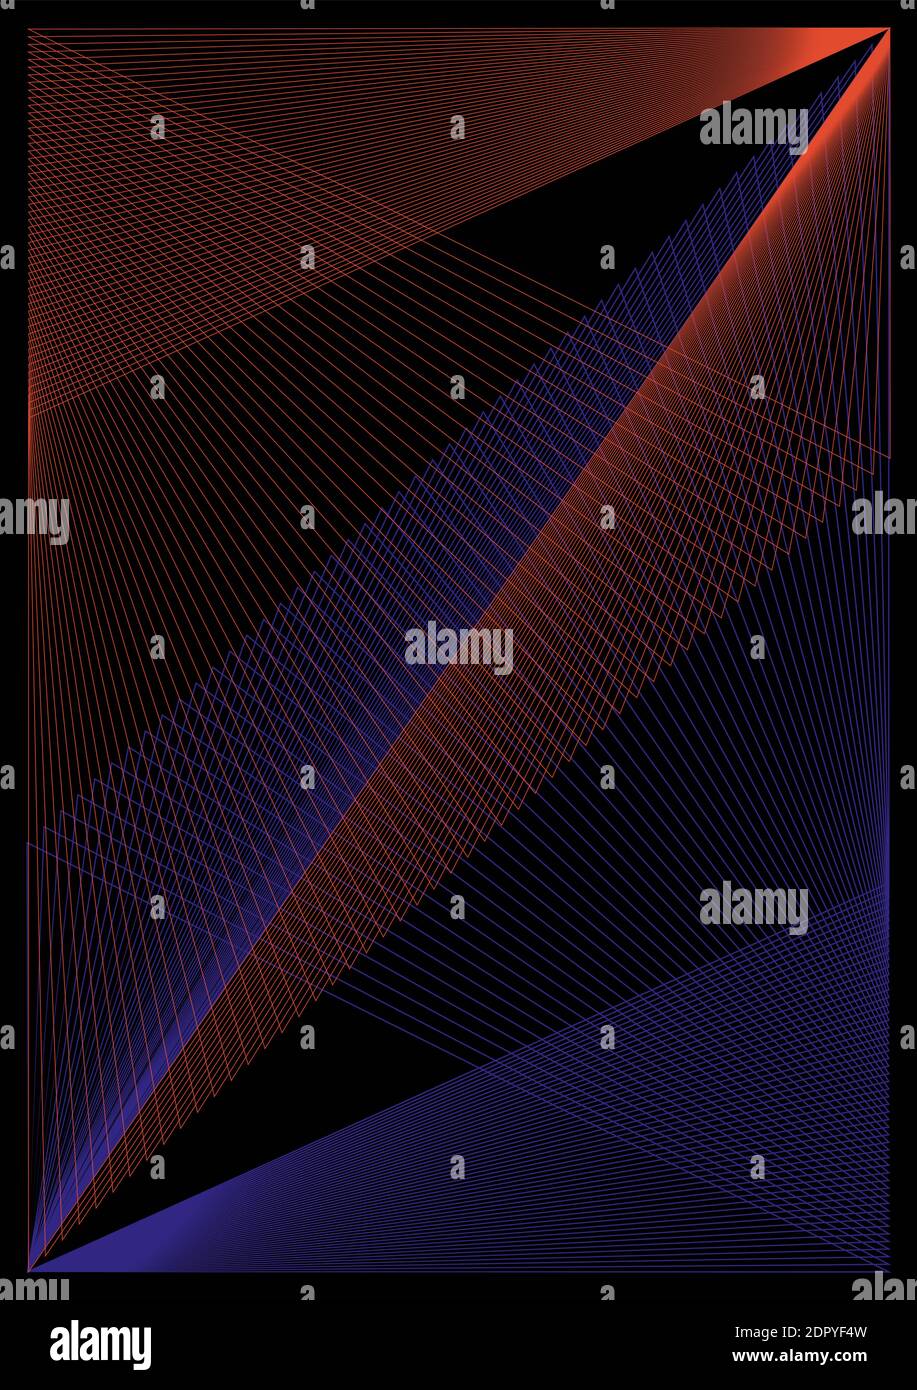 Vektor abstraktes Muster - geometrische Formen von orange und lila Schnittlinien auf schwarzem Hintergrund Stock Vektor